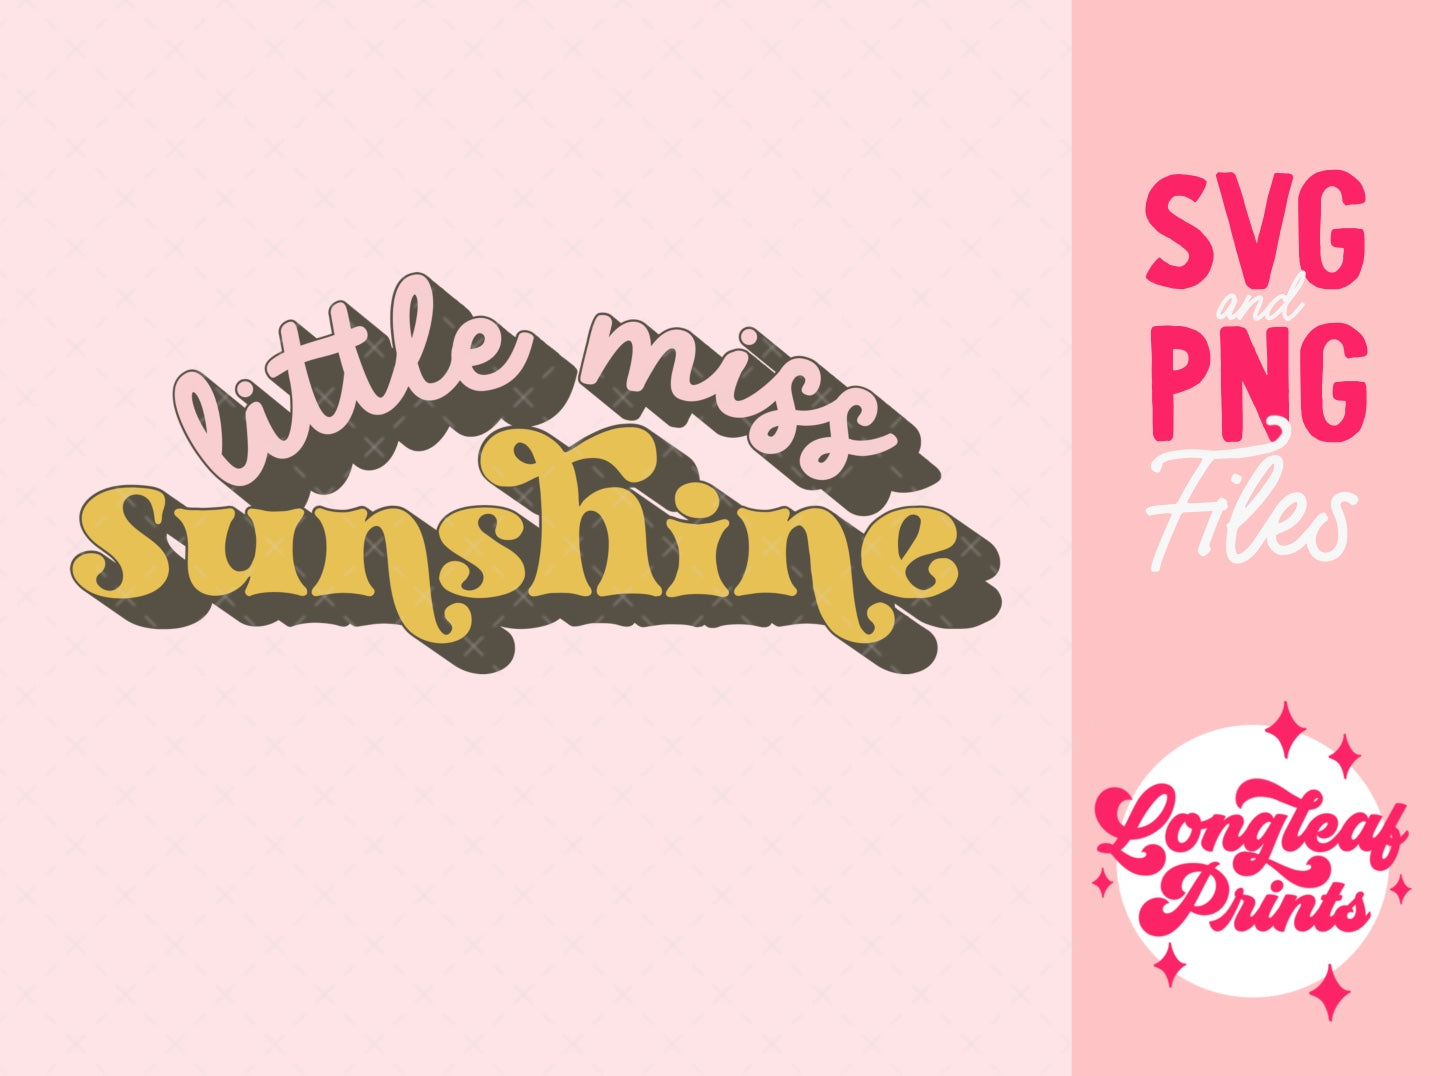 Little Miss Sunshine SVG Digital Download Design File